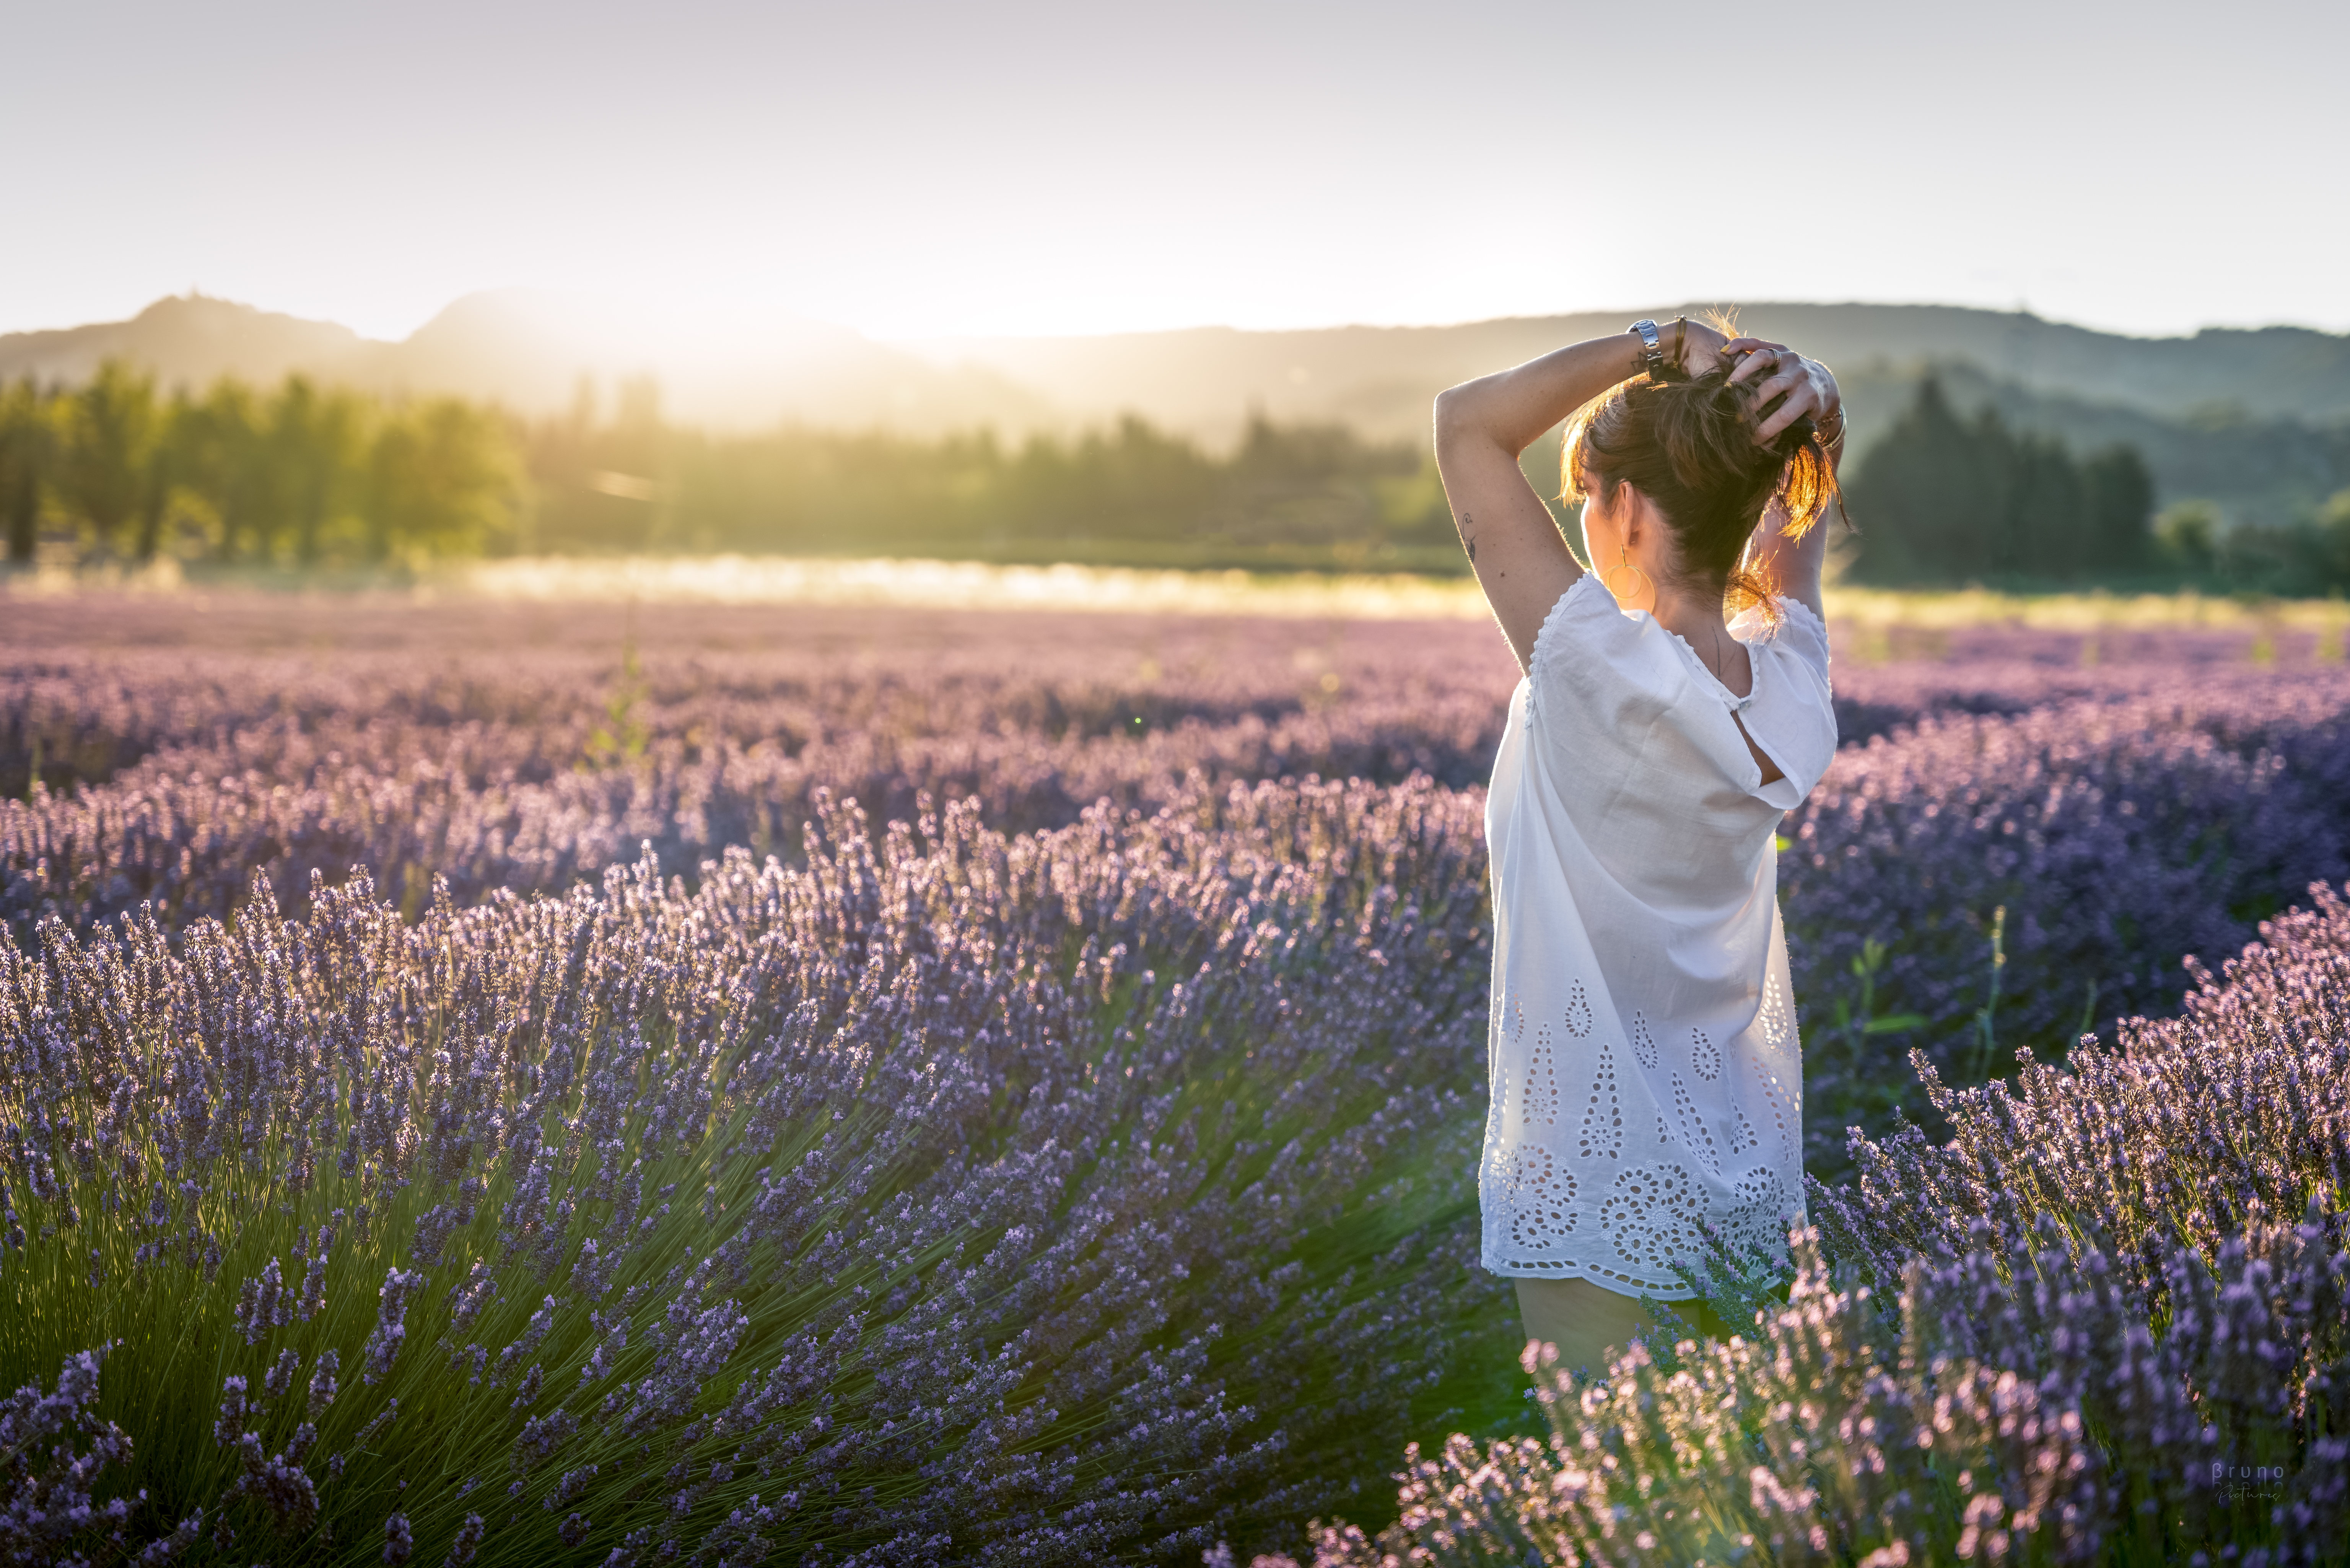 People 6144x4100 field women model sian sunlight nature landscape hand(s) in hair lavender depth of field